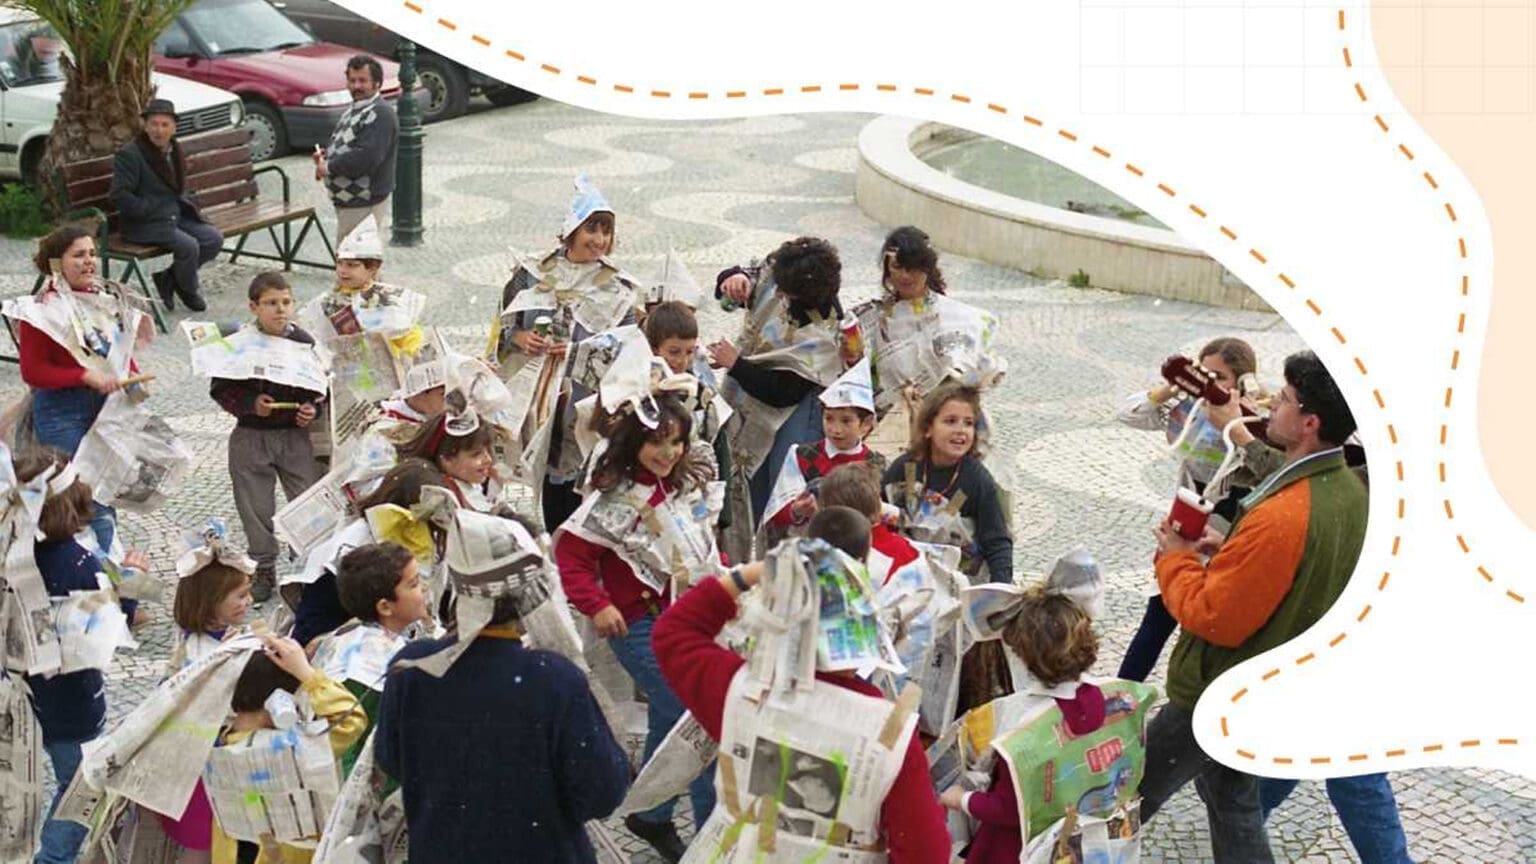 Exposição “Cápsula do Tempo” celebra 35 anos da Oficina da Criança em Alcácer do Sal